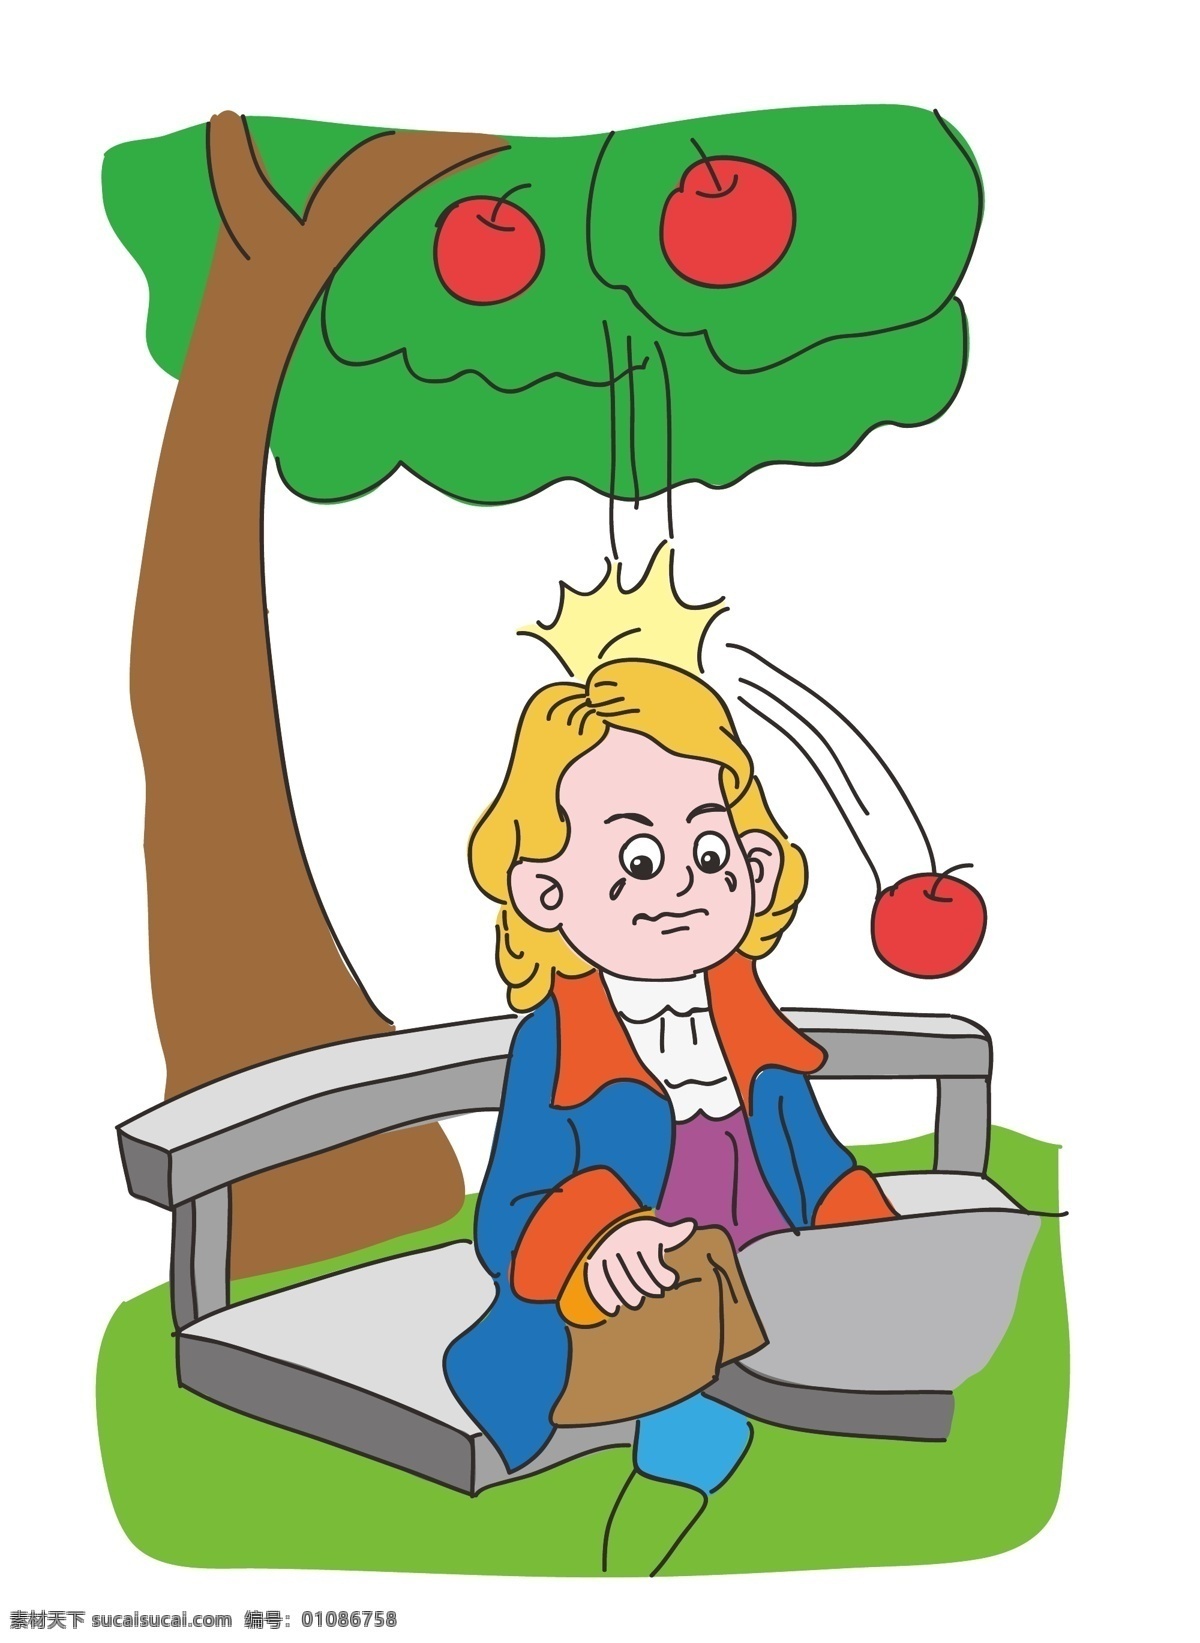 牛顿与苹果 牛顿 苹果 万有引力 科学 物理 矢量绘画 动漫动画 动漫人物